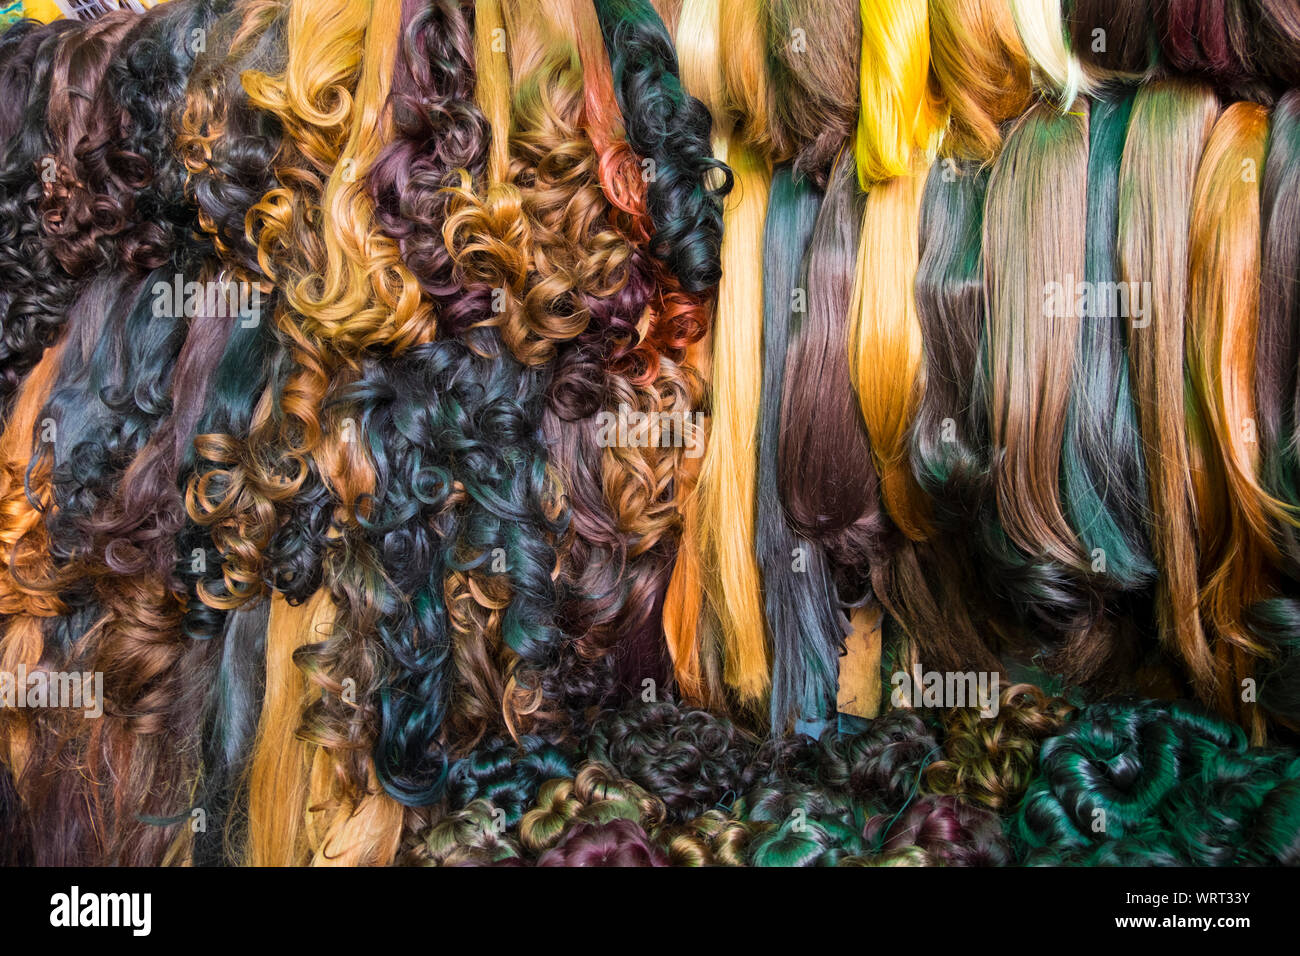 Una amplia variedad de pelucas, extensiones de cabello y otros relacionados con el cabello piezas están a la venta en el mercado central de Phnom Penh, Camboya. Foto de stock